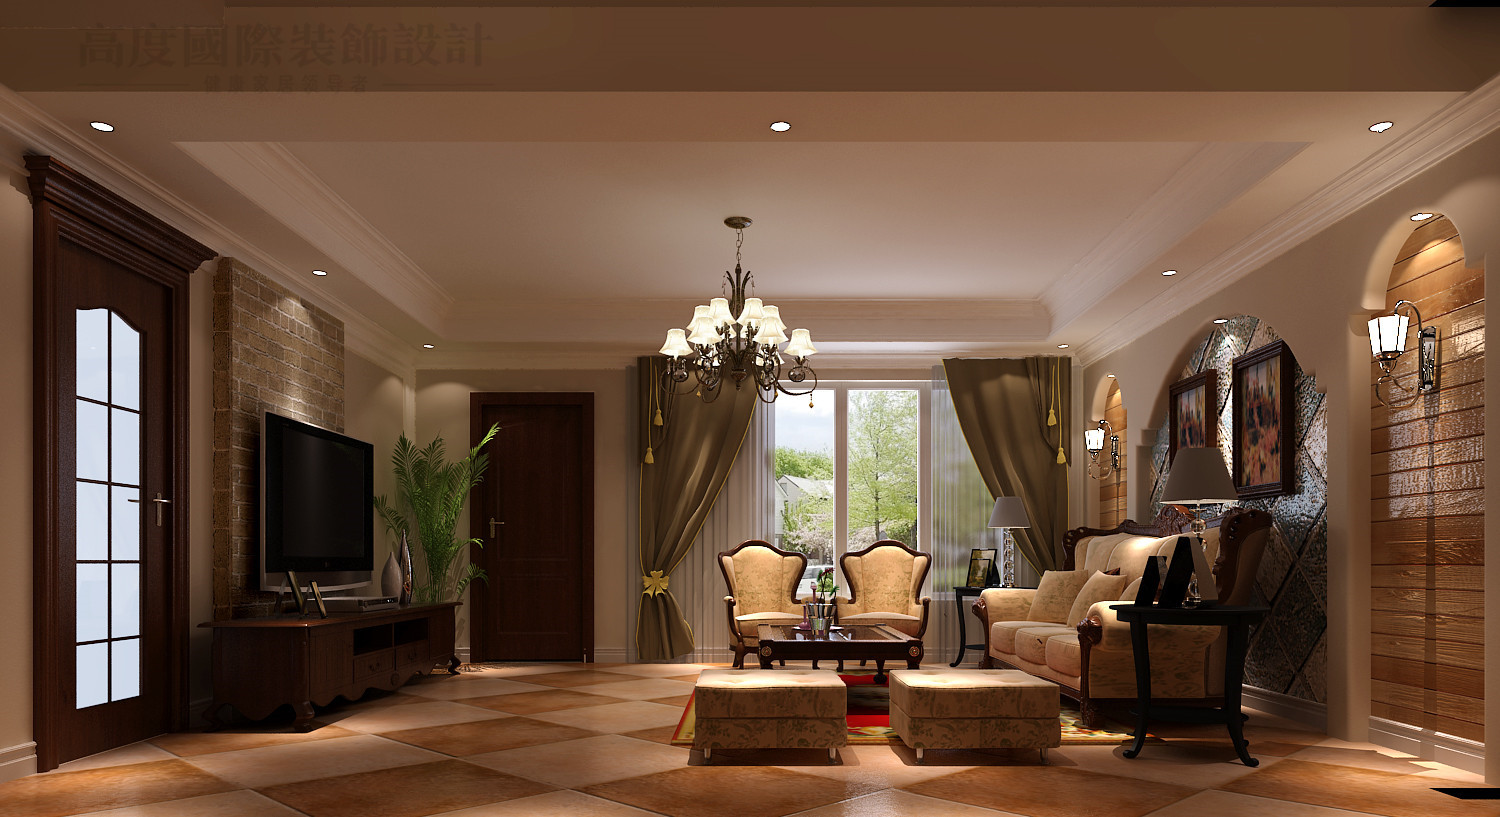 托斯卡纳 别墅 潮白河 效果图 装修 客厅图片来自高度国际别墅装饰设计在潮白河孔雀城托斯卡纳风格设计的分享